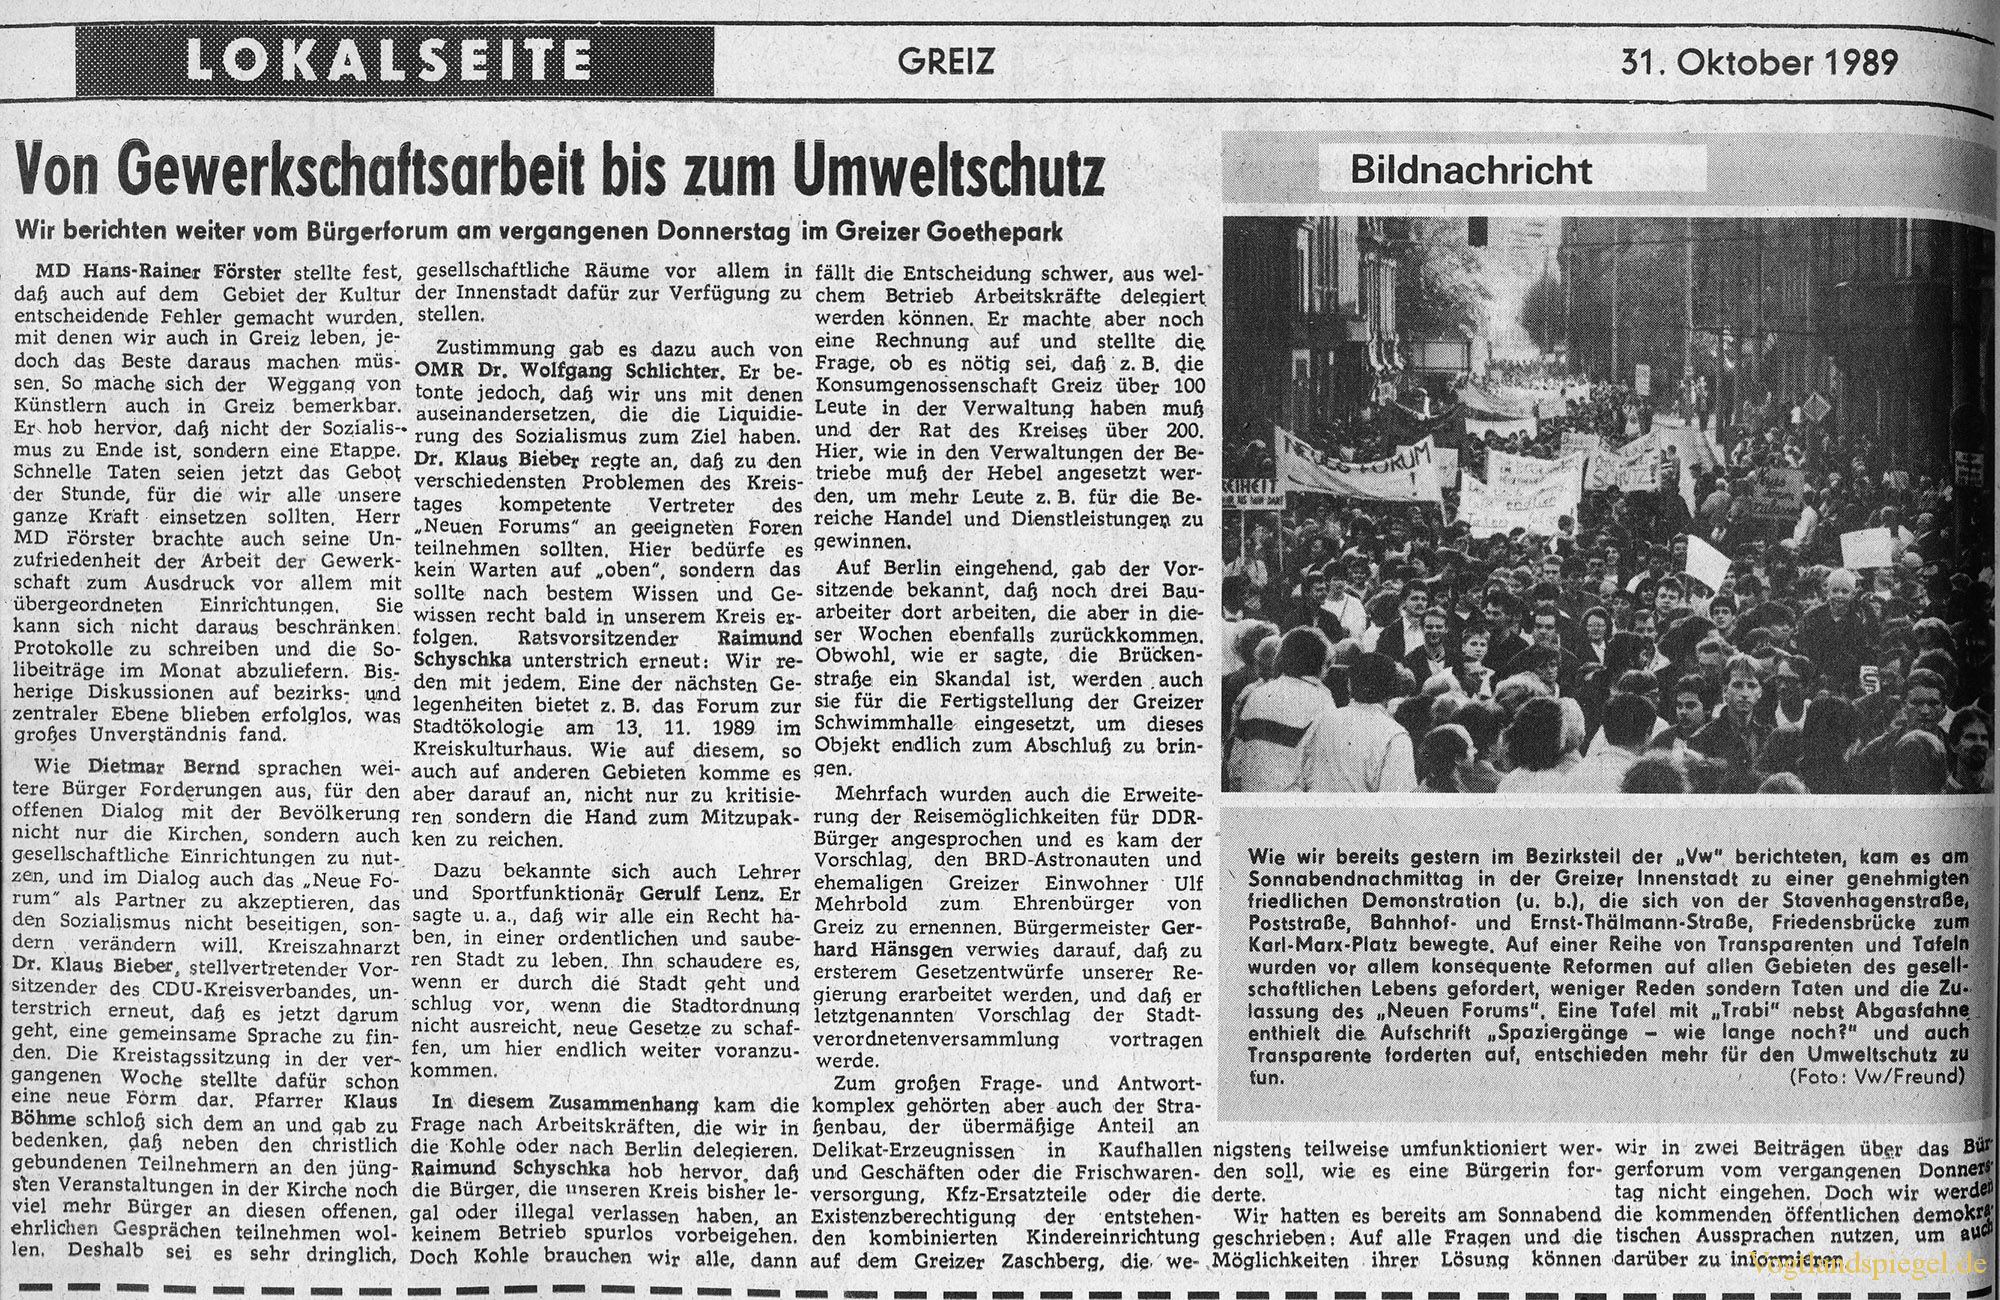 Volkswacht 31.10.1989